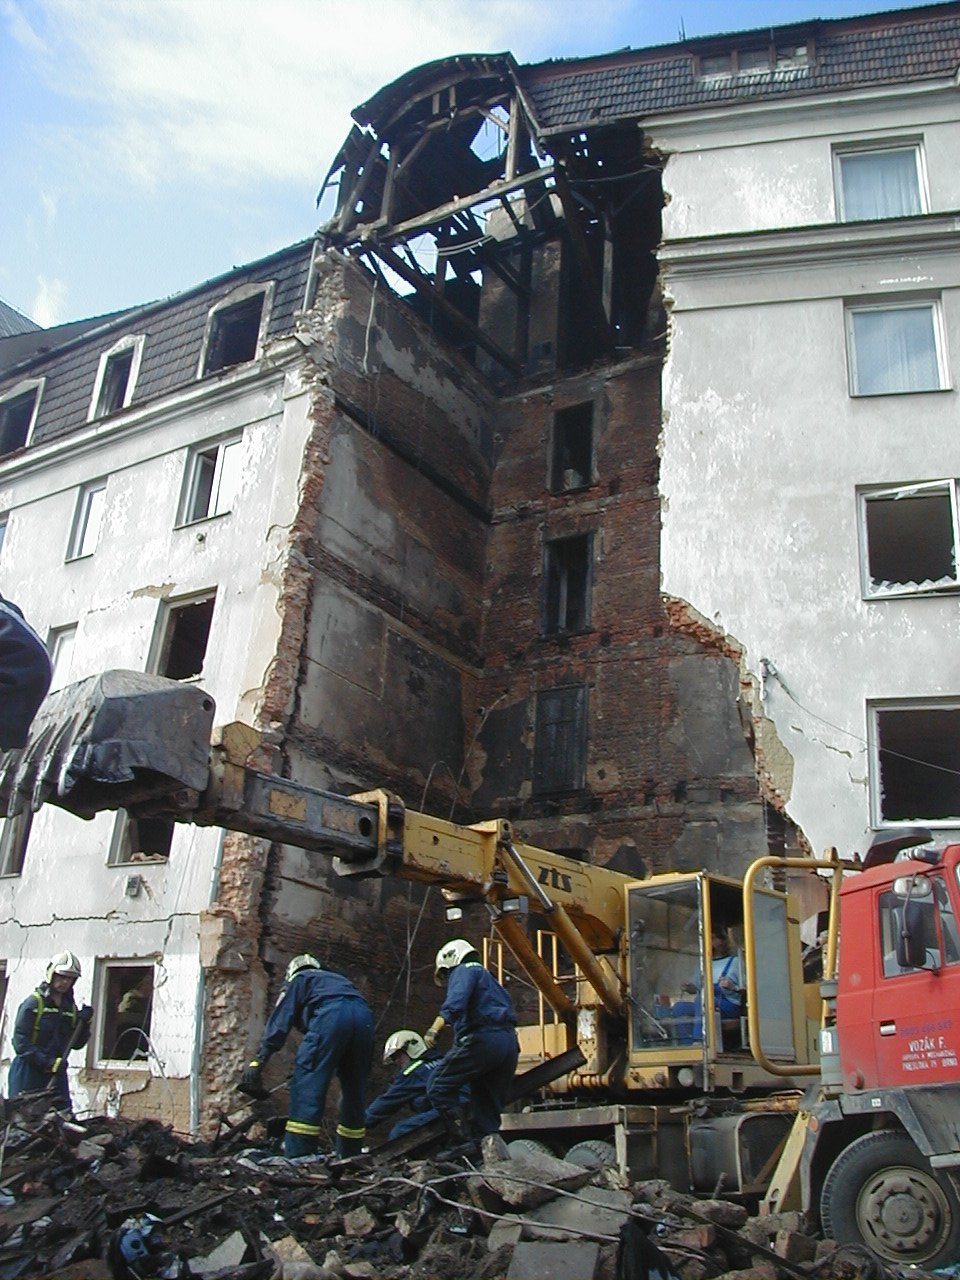 Výbuch plynu 21. června 2004 v Tržní ulici v Brně zabil 4 lidi. Město pak nechalo narušený dům strhnout.